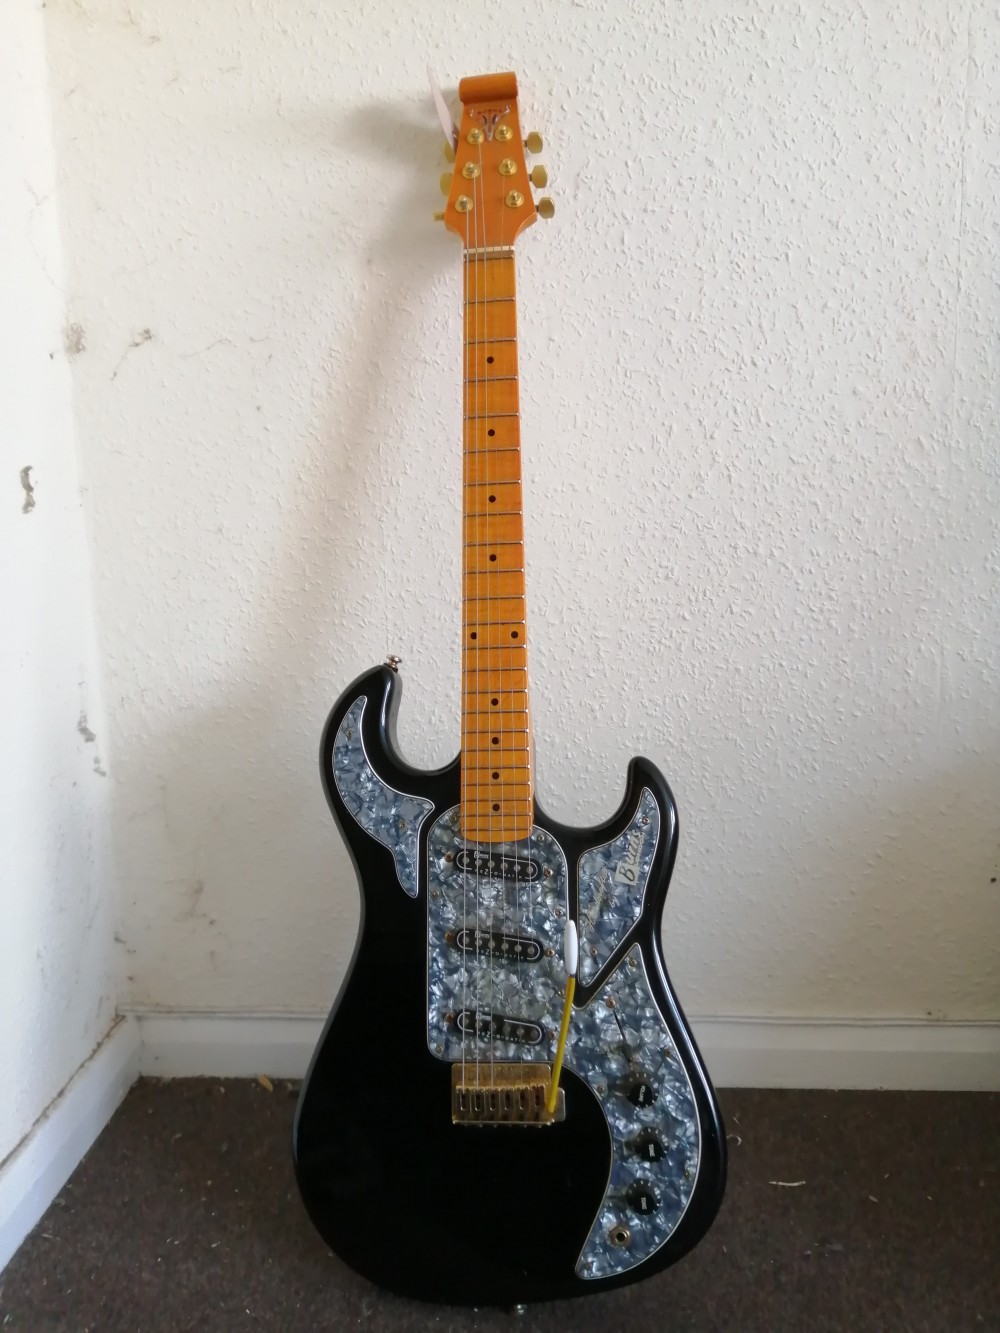 A Burns Marquee guitar